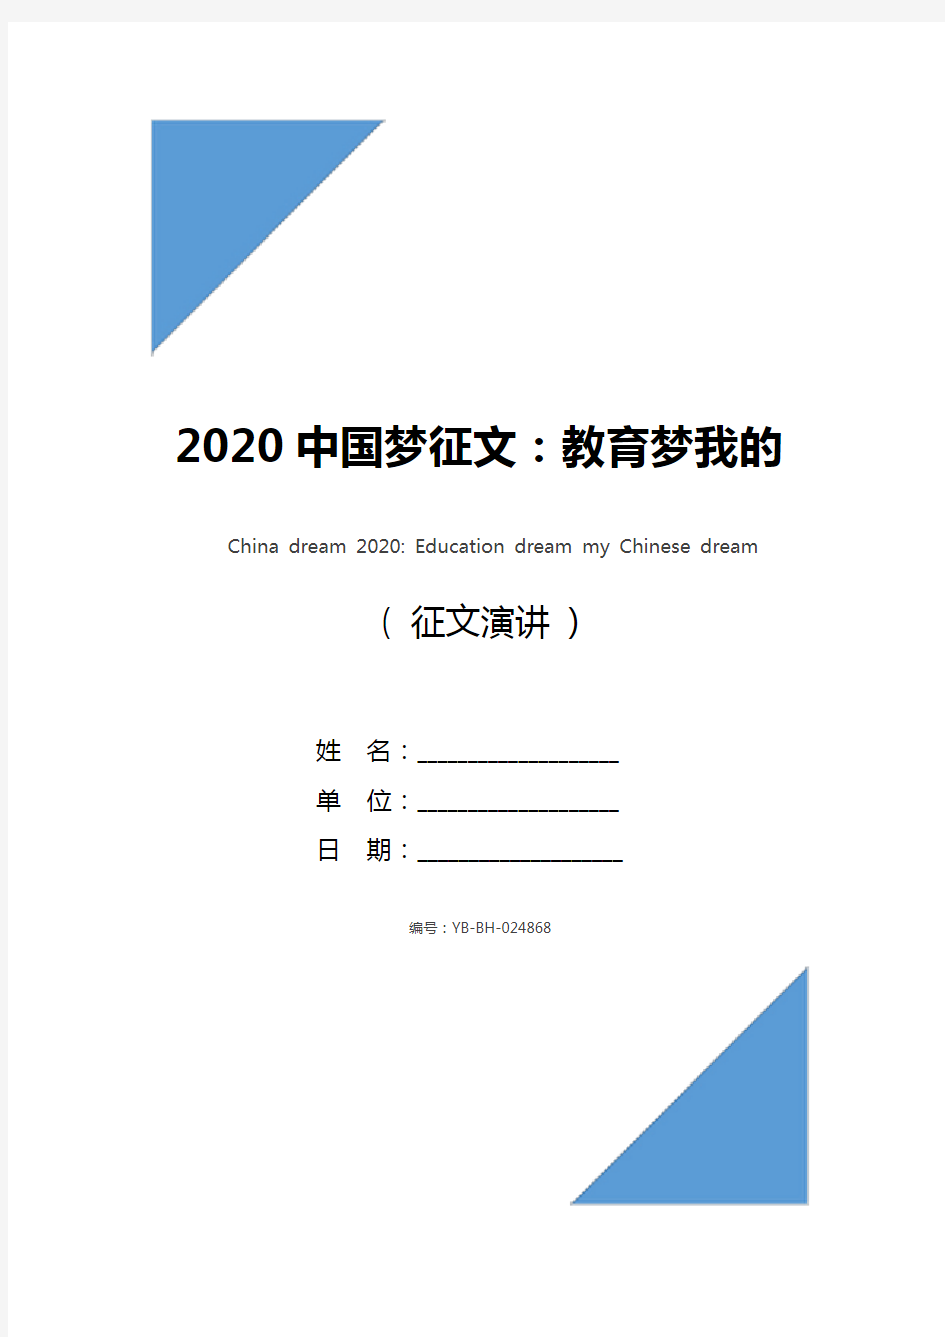 2020中国梦征文：教育梦我的中国梦